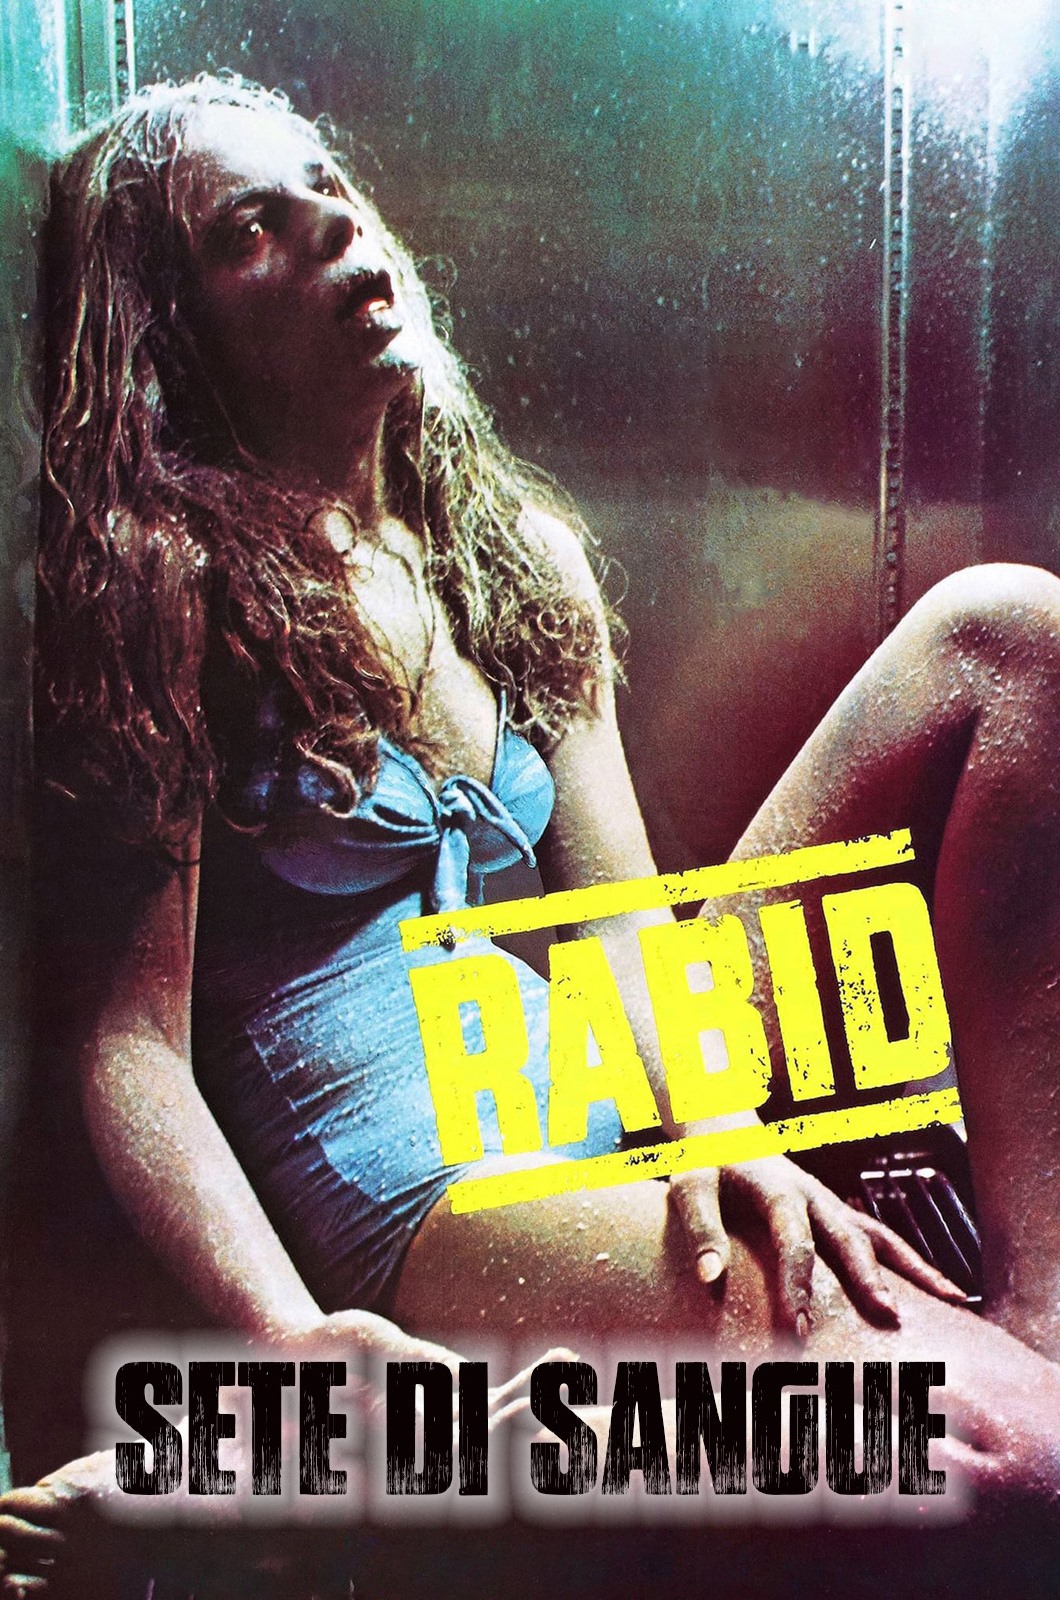 Rabid – Sete di sangue [HD] (1977)